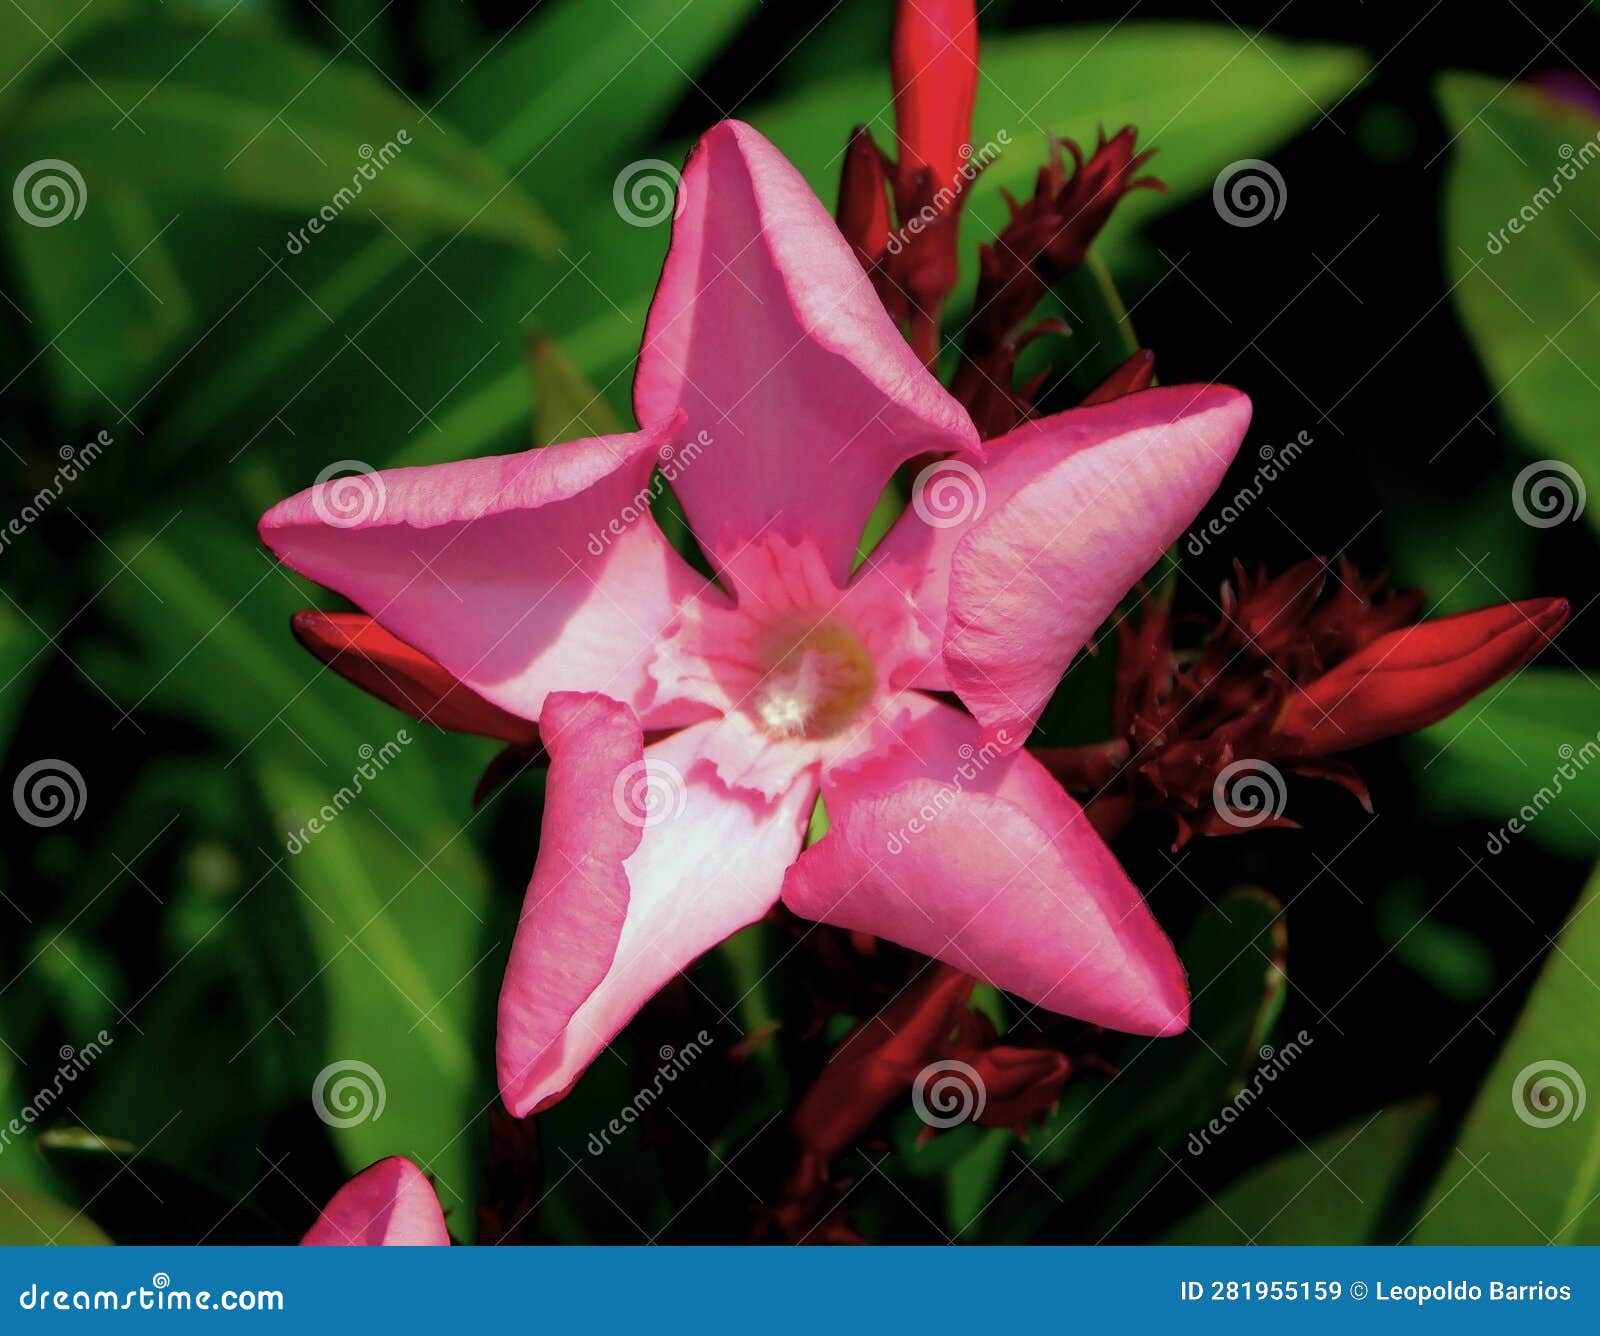 nerium oleander pink flower